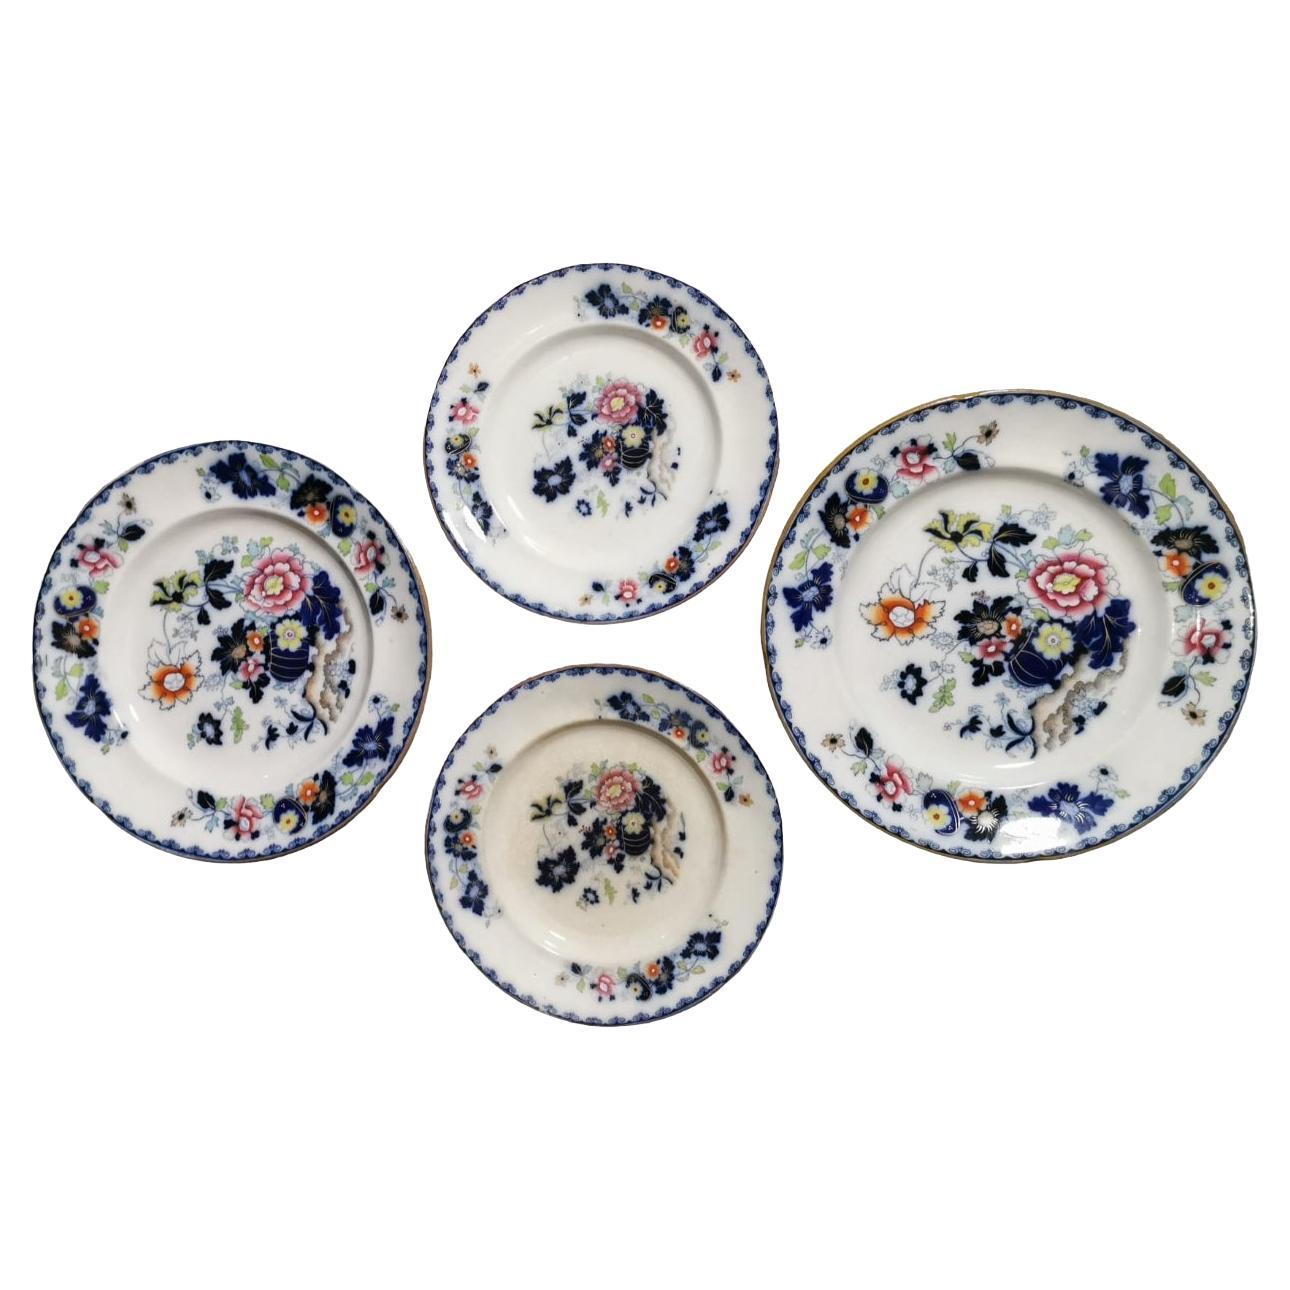 Ensemble de 4 assiettes anglaises de style victorien décorées d'armoiries royales Marque royale